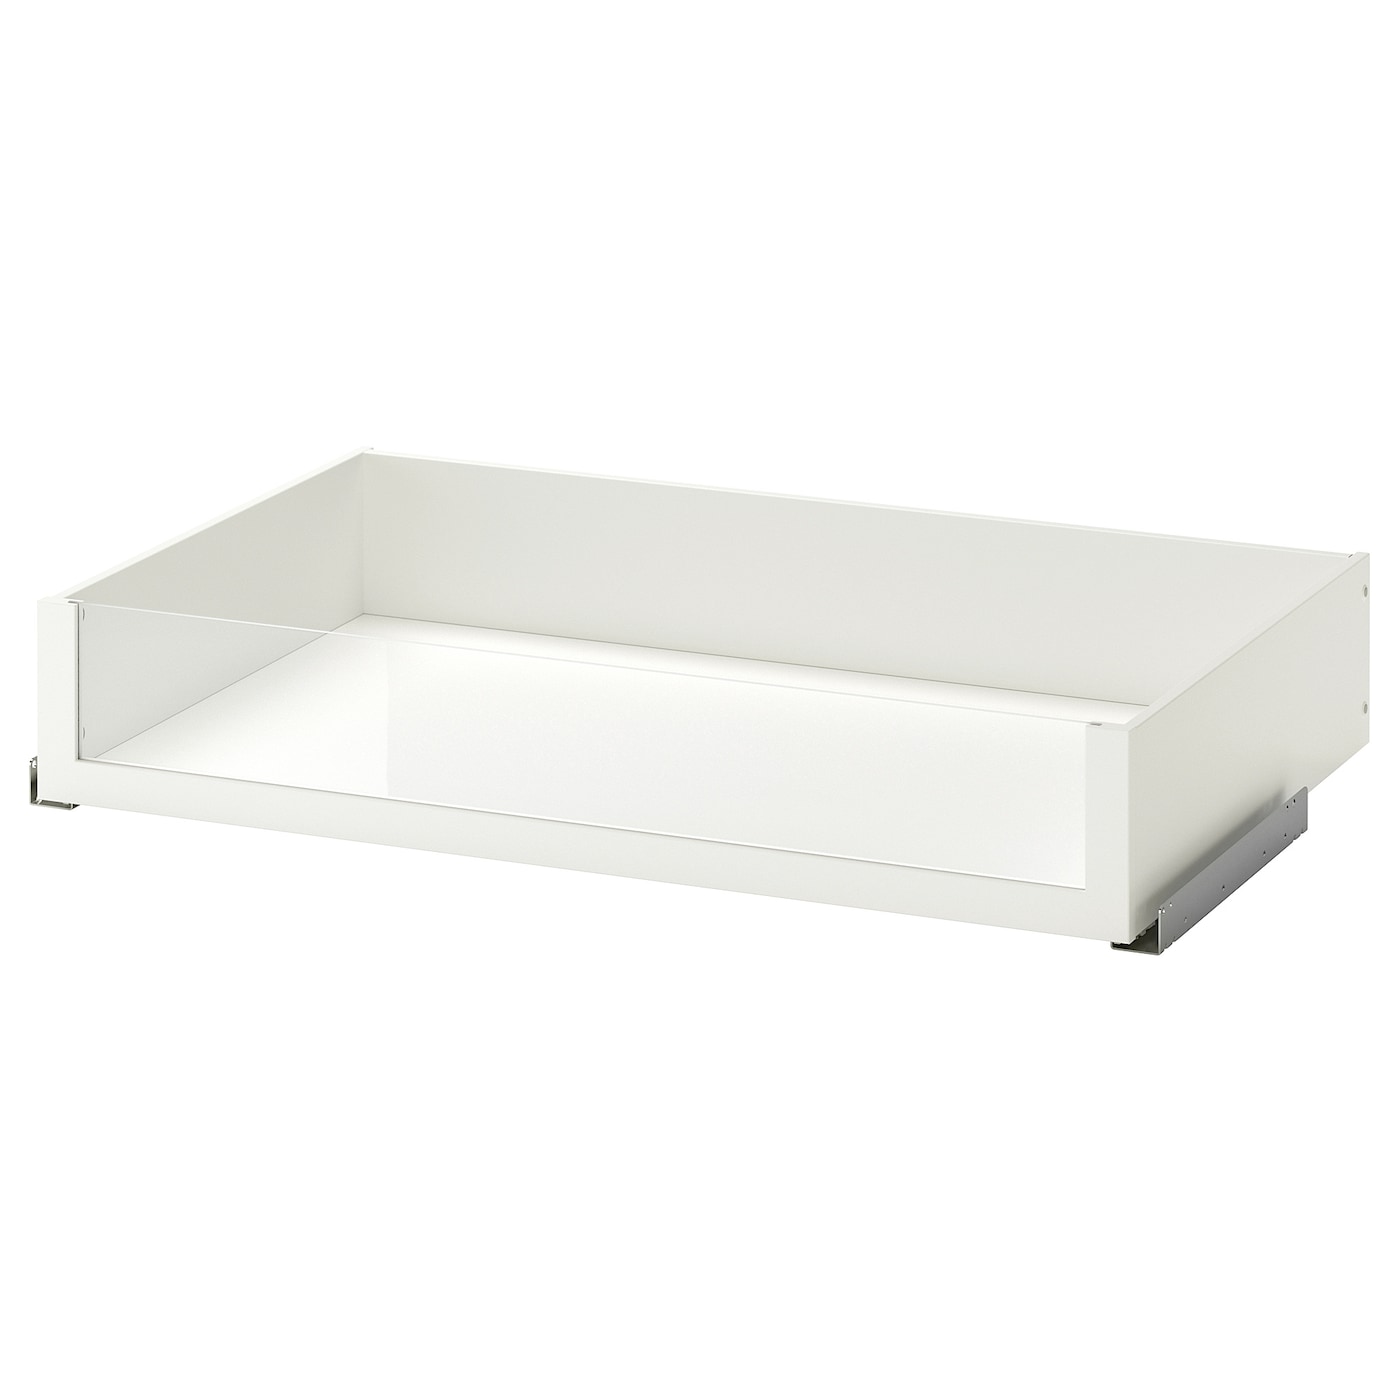 Выдвижной ящик со стеклянной передней панелью - IKEA KOMPLEMENT, 16х56,9х92,8 см, белый, КОМПЛИМЕНТ ИКЕА